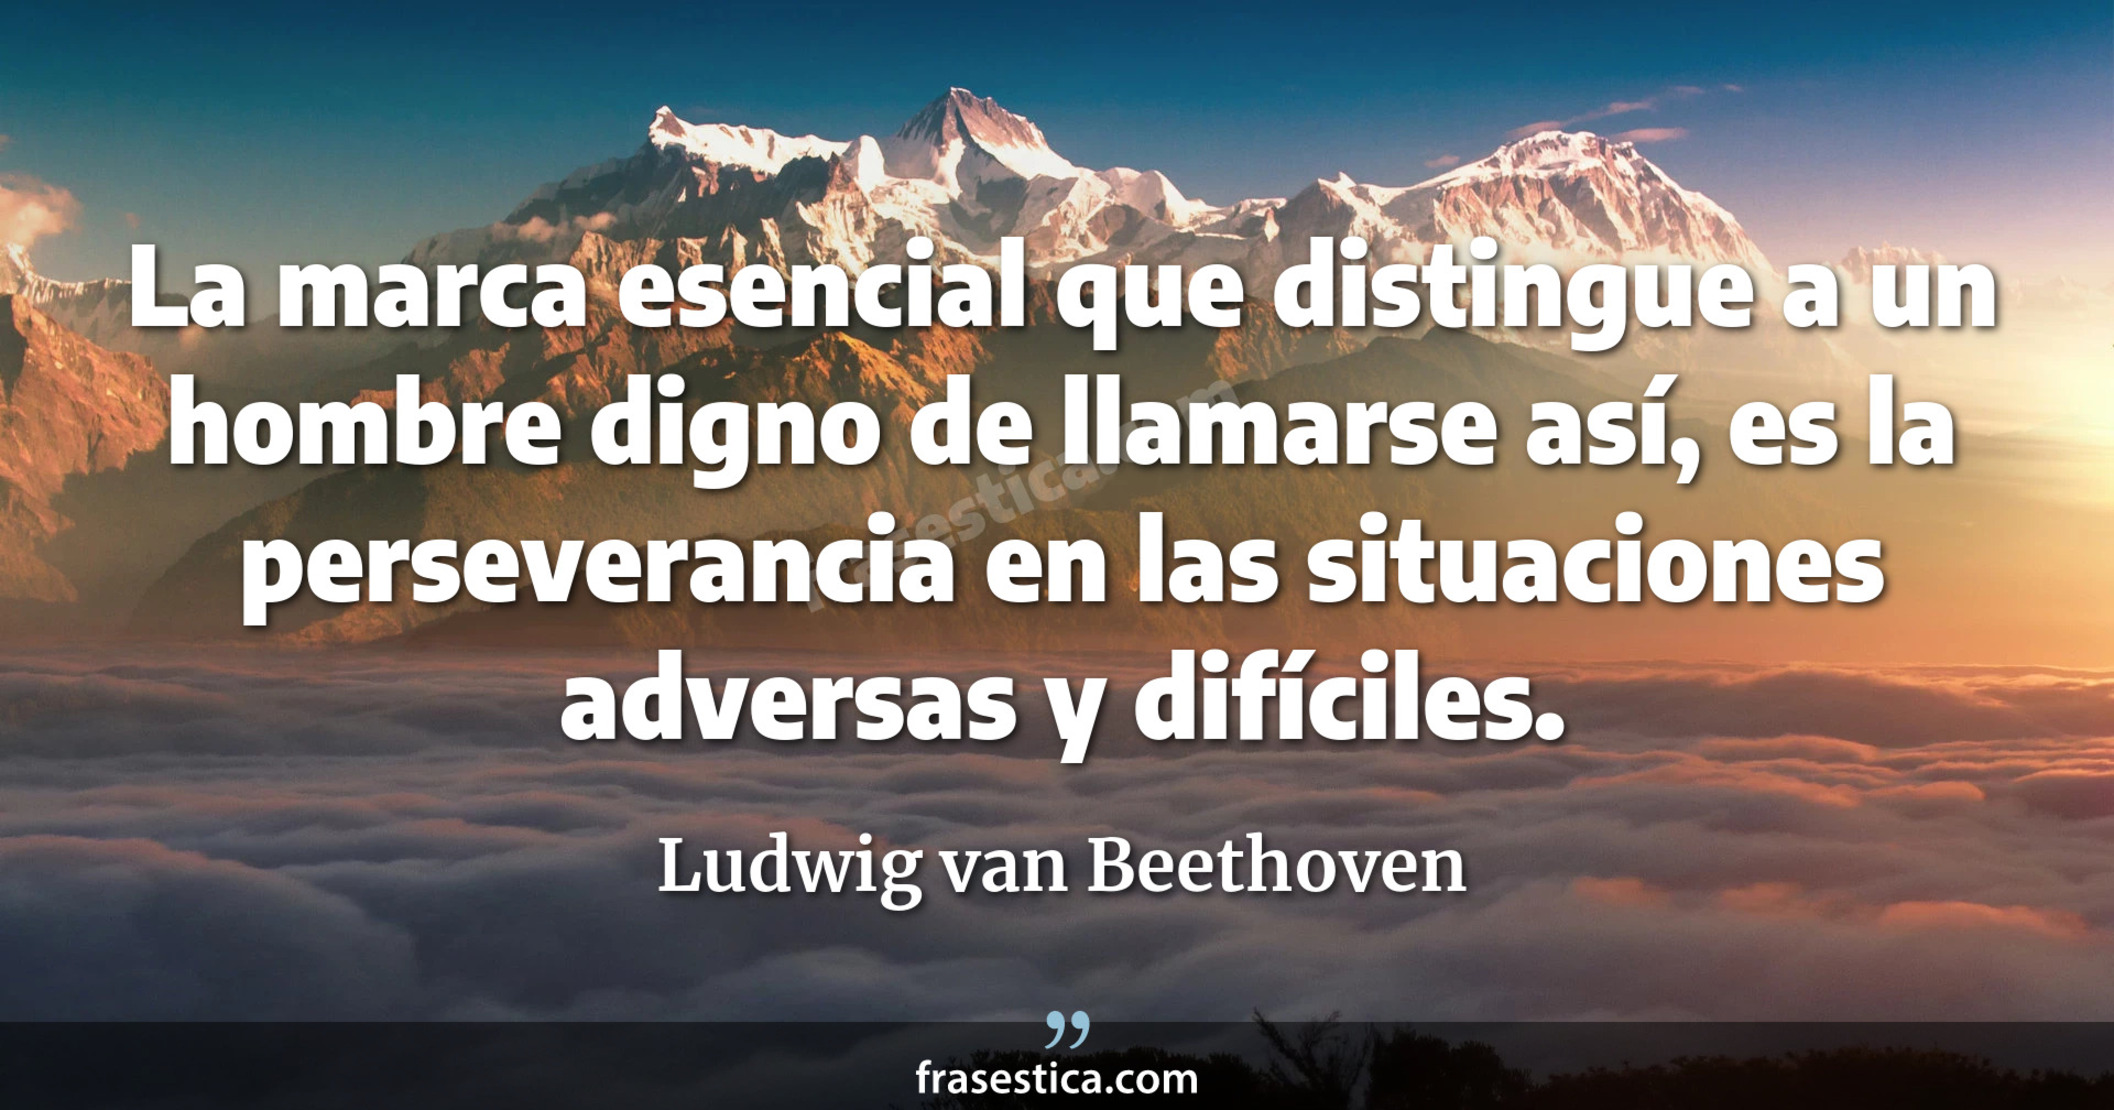 La marca esencial que distingue a un hombre digno de llamarse así, es la perseverancia en las situaciones adversas y difíciles. - Ludwig van Beethoven